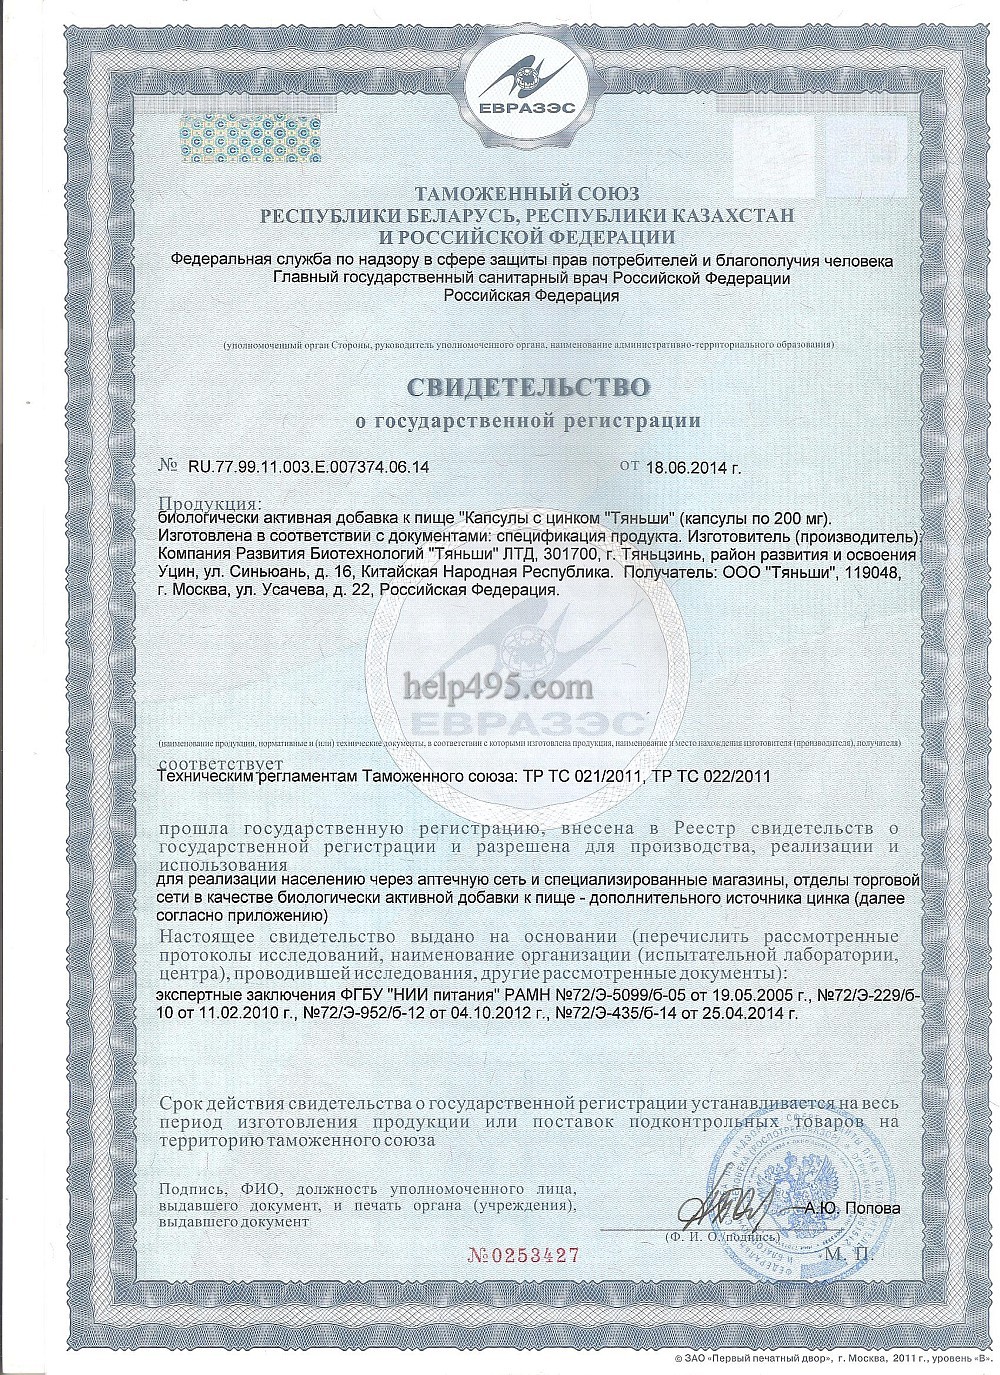 1-ая стр. сертификата препарата: Капсулы с цинком Тяньши